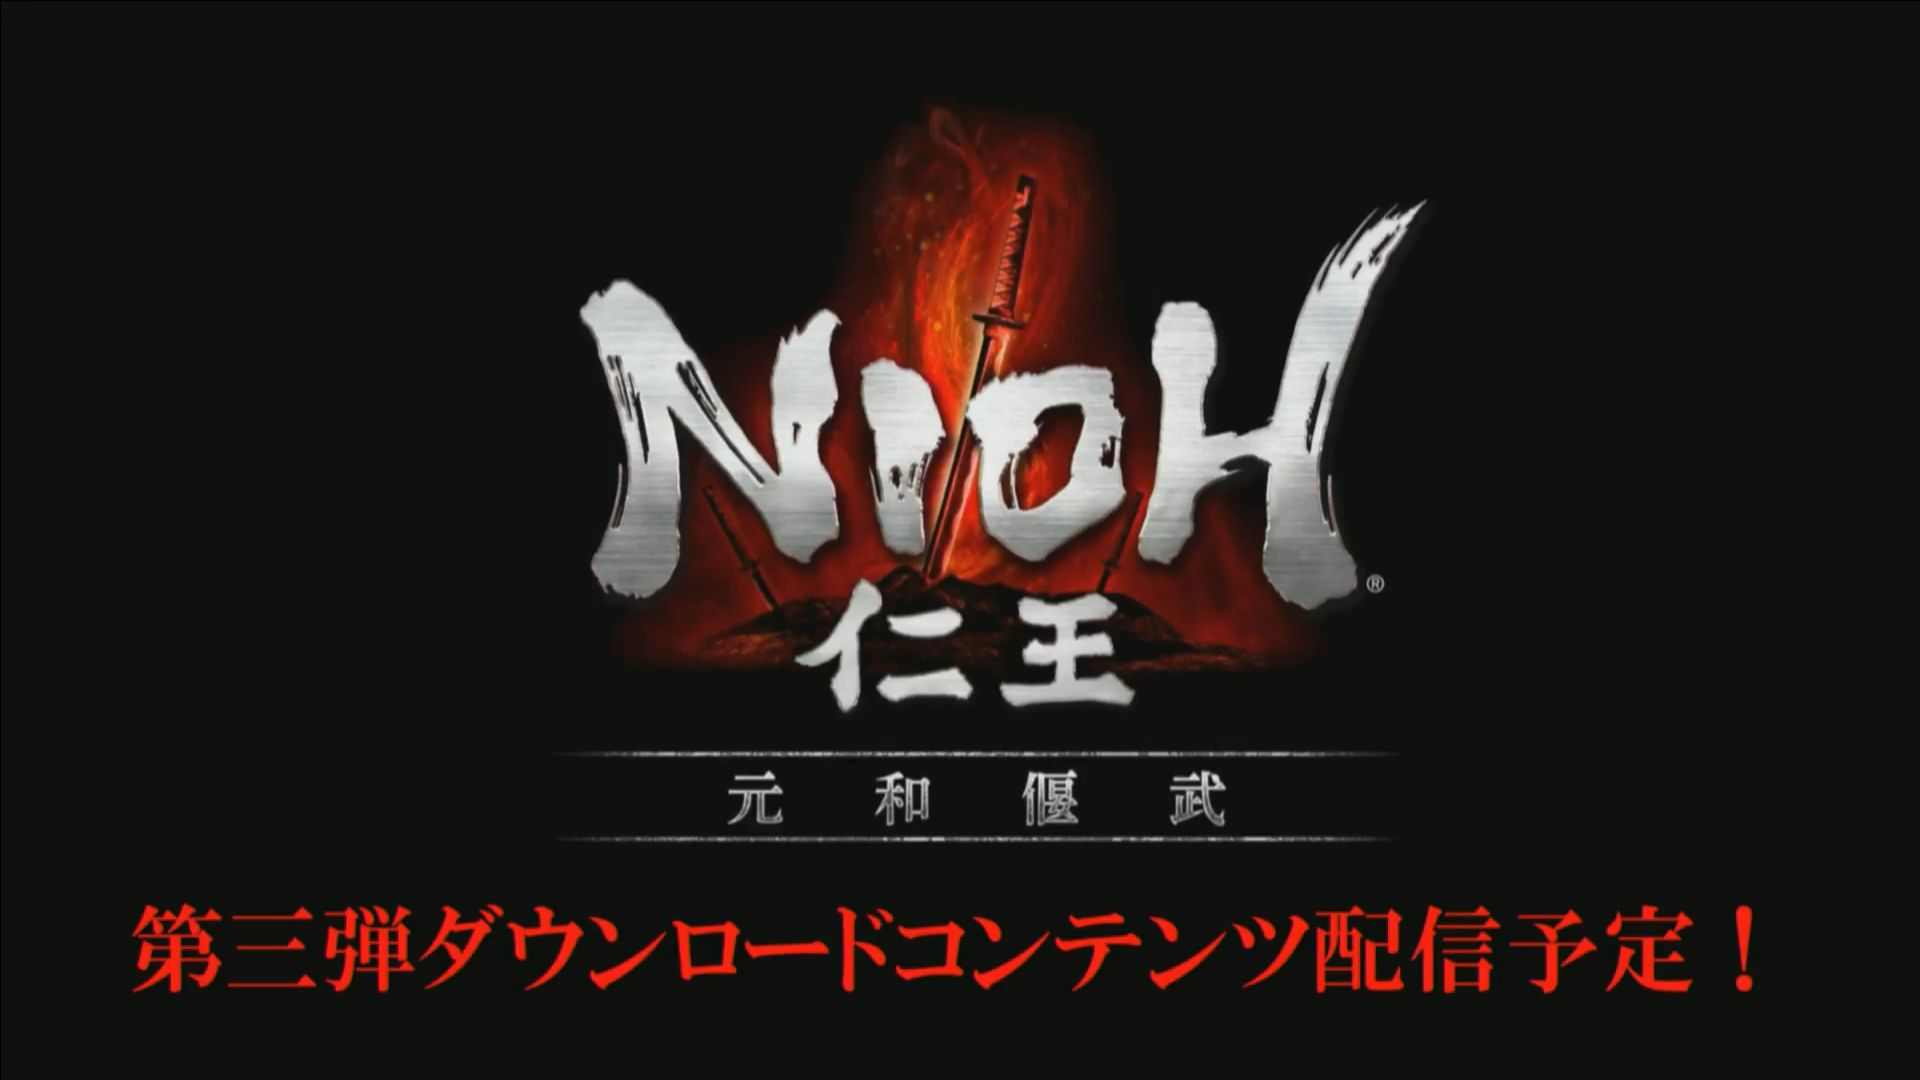 Последнее сюжетное дополнение к Nioh будет называться Genna Enbu